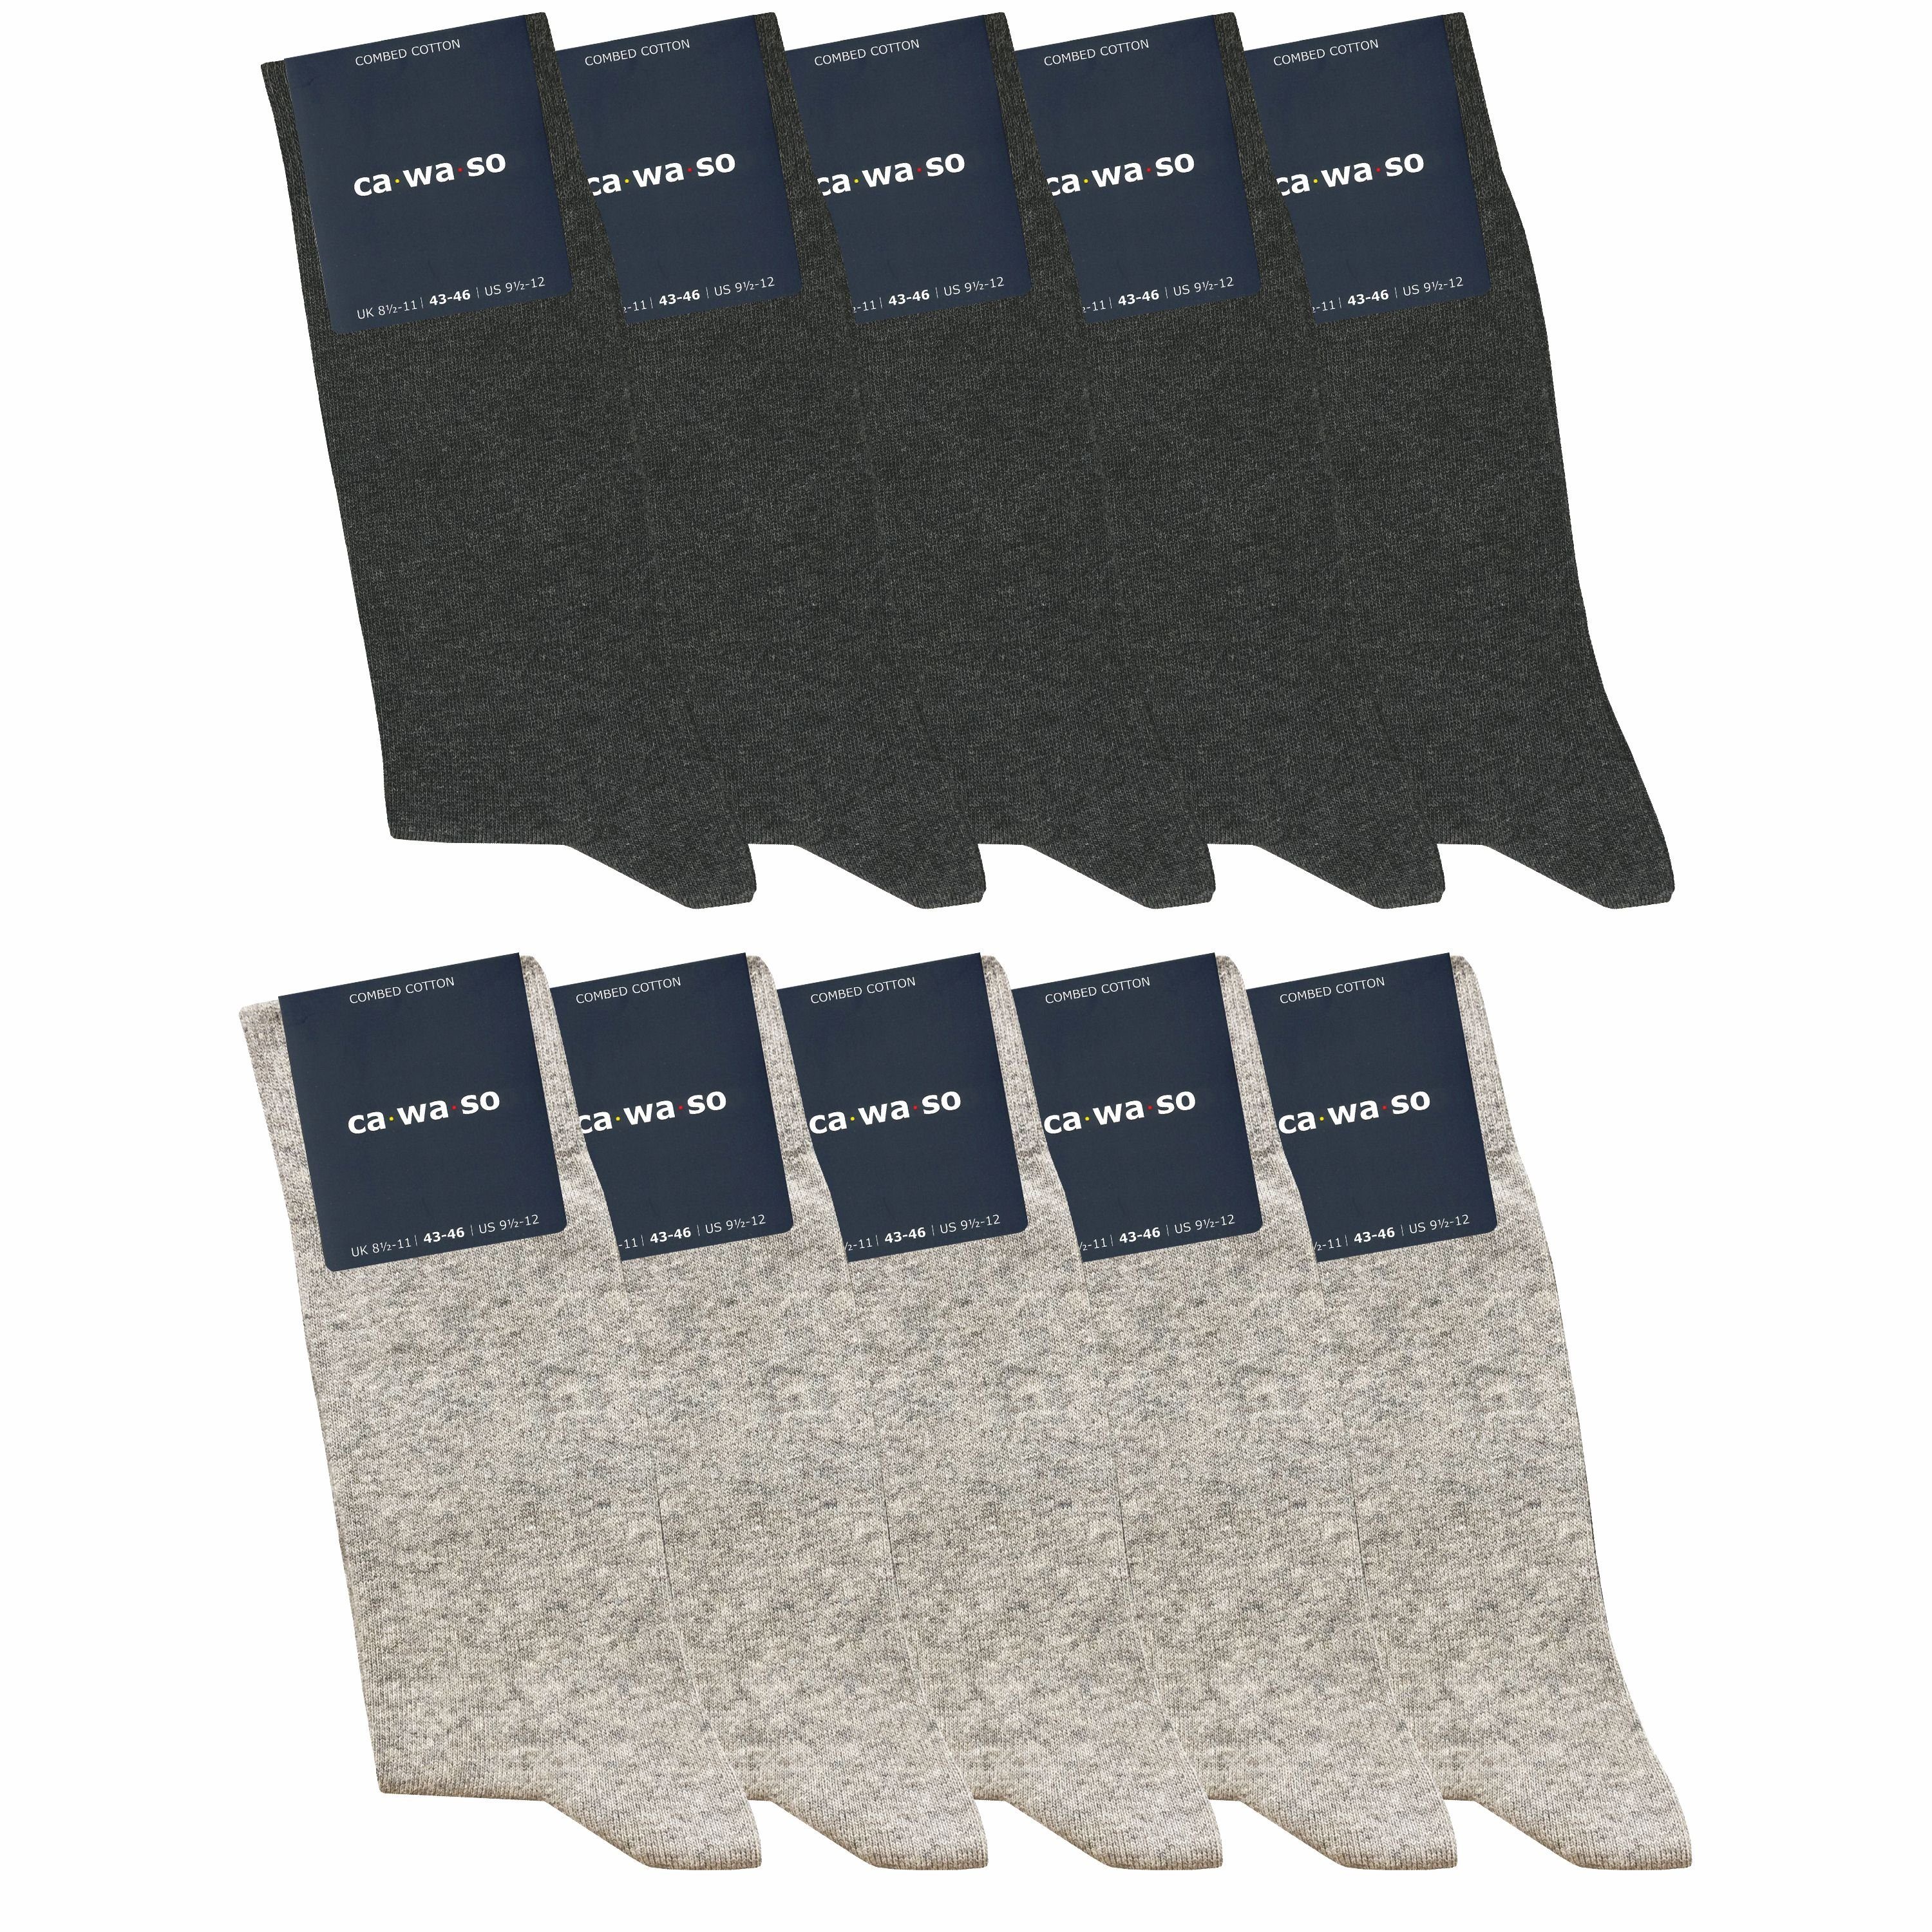 ca·wa·so Socken für Damen & Herren - bequem & weich - aus doppelt gekämmter Baumwolle (10 Paar) Socken in schwarz, bunt, grau, blau und weiteren Farben grau & hellgrau